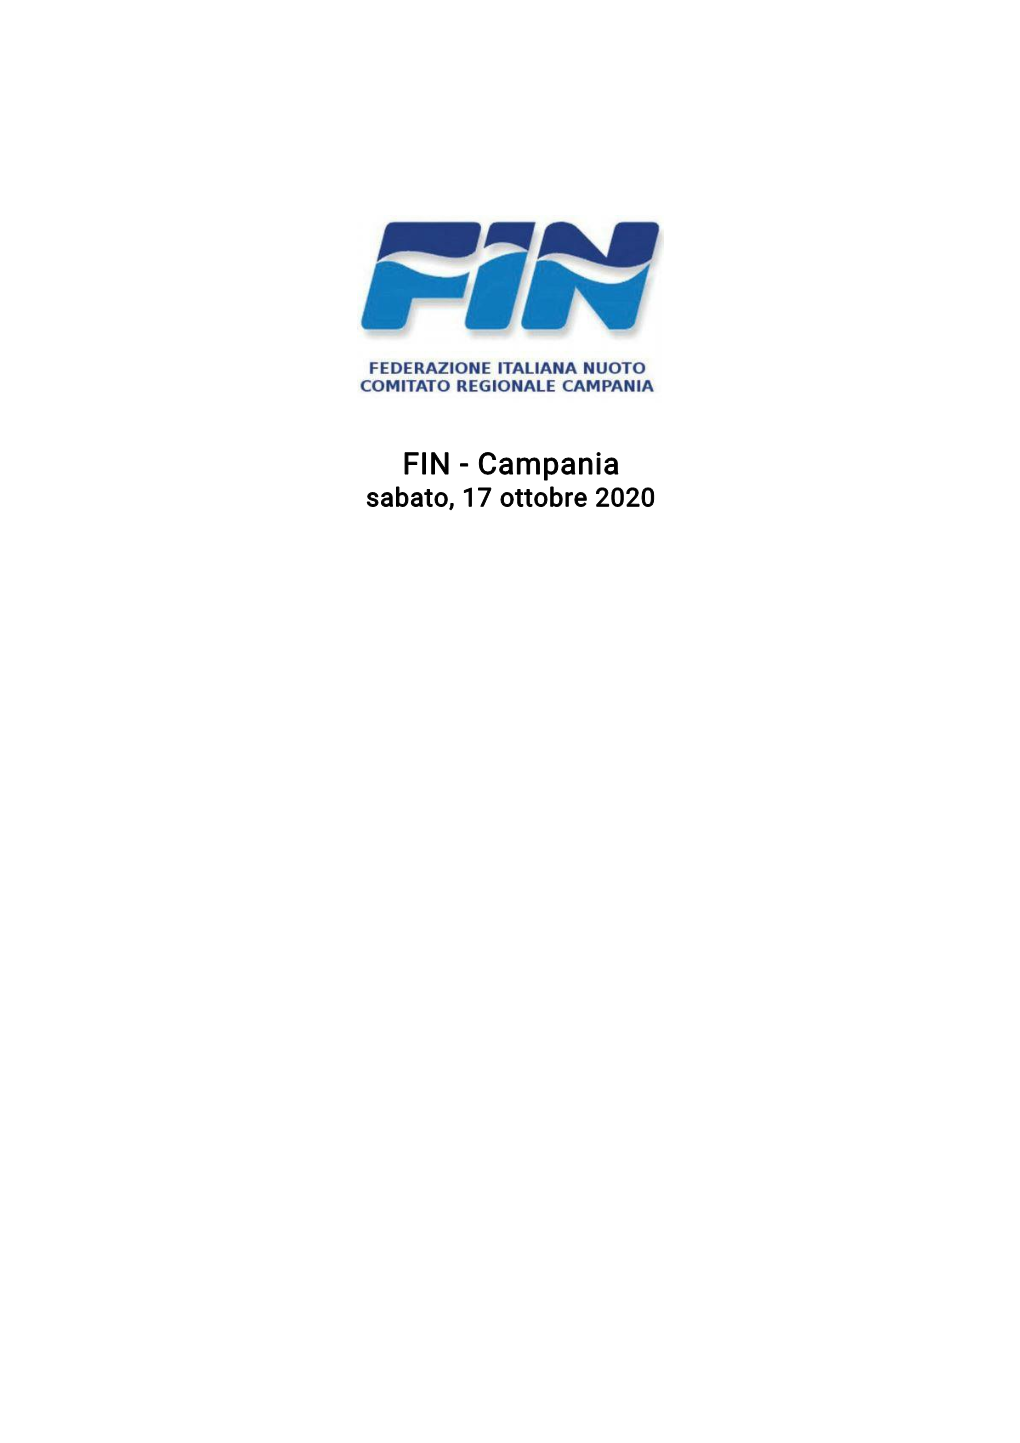 FIN - Campania Sabato, 17 Ottobre 2020 FIN - Campania Sabato, 17 Ottobre 2020